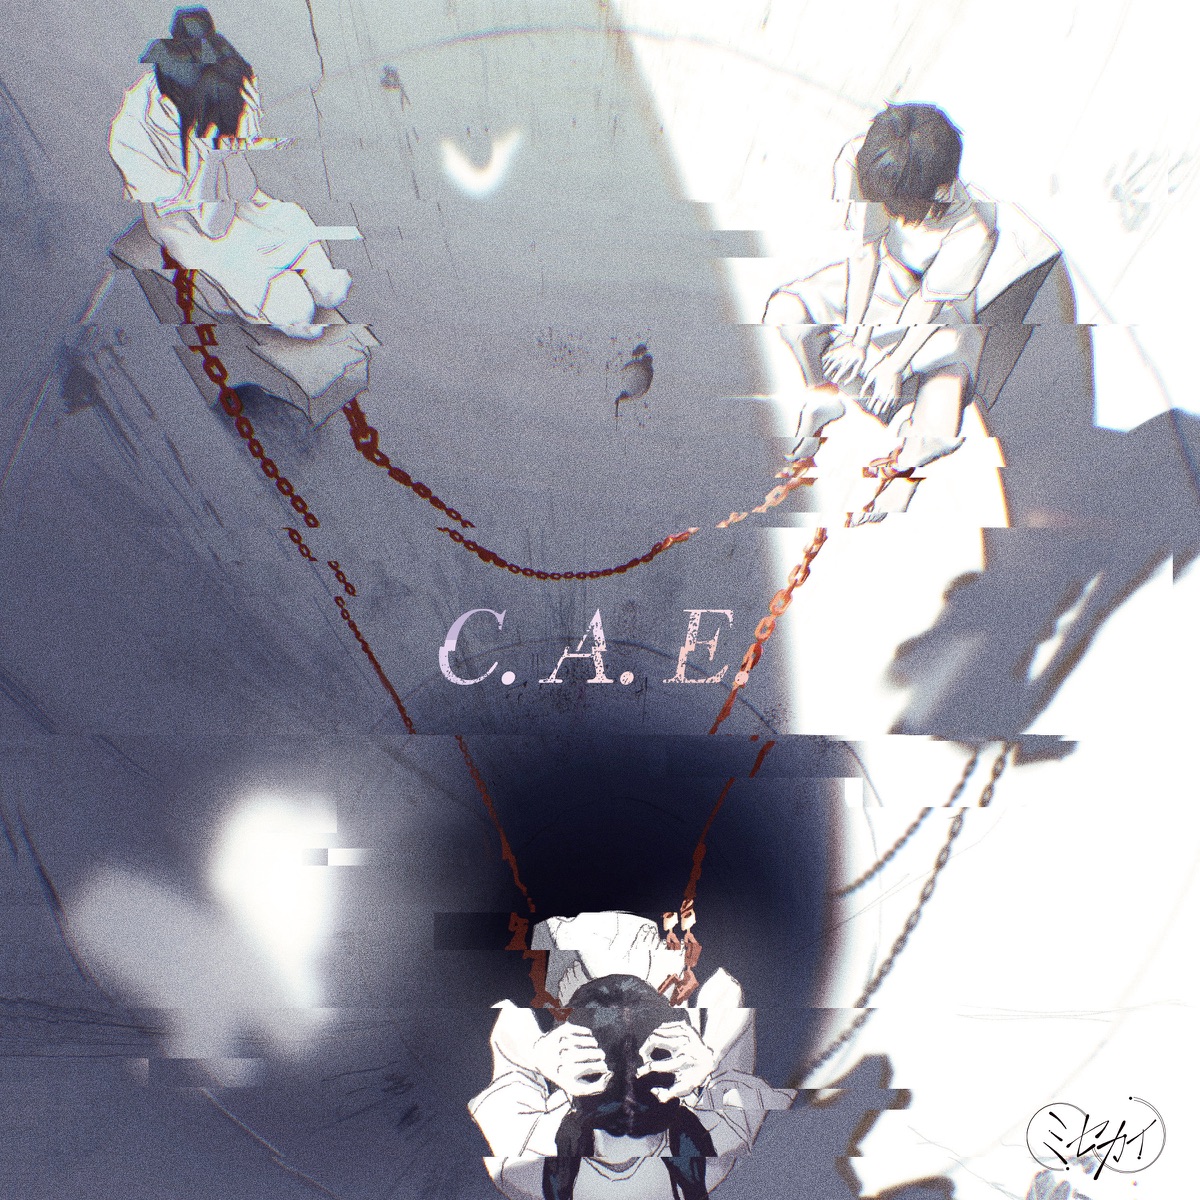 Misekai — C.A.E. cover artwork